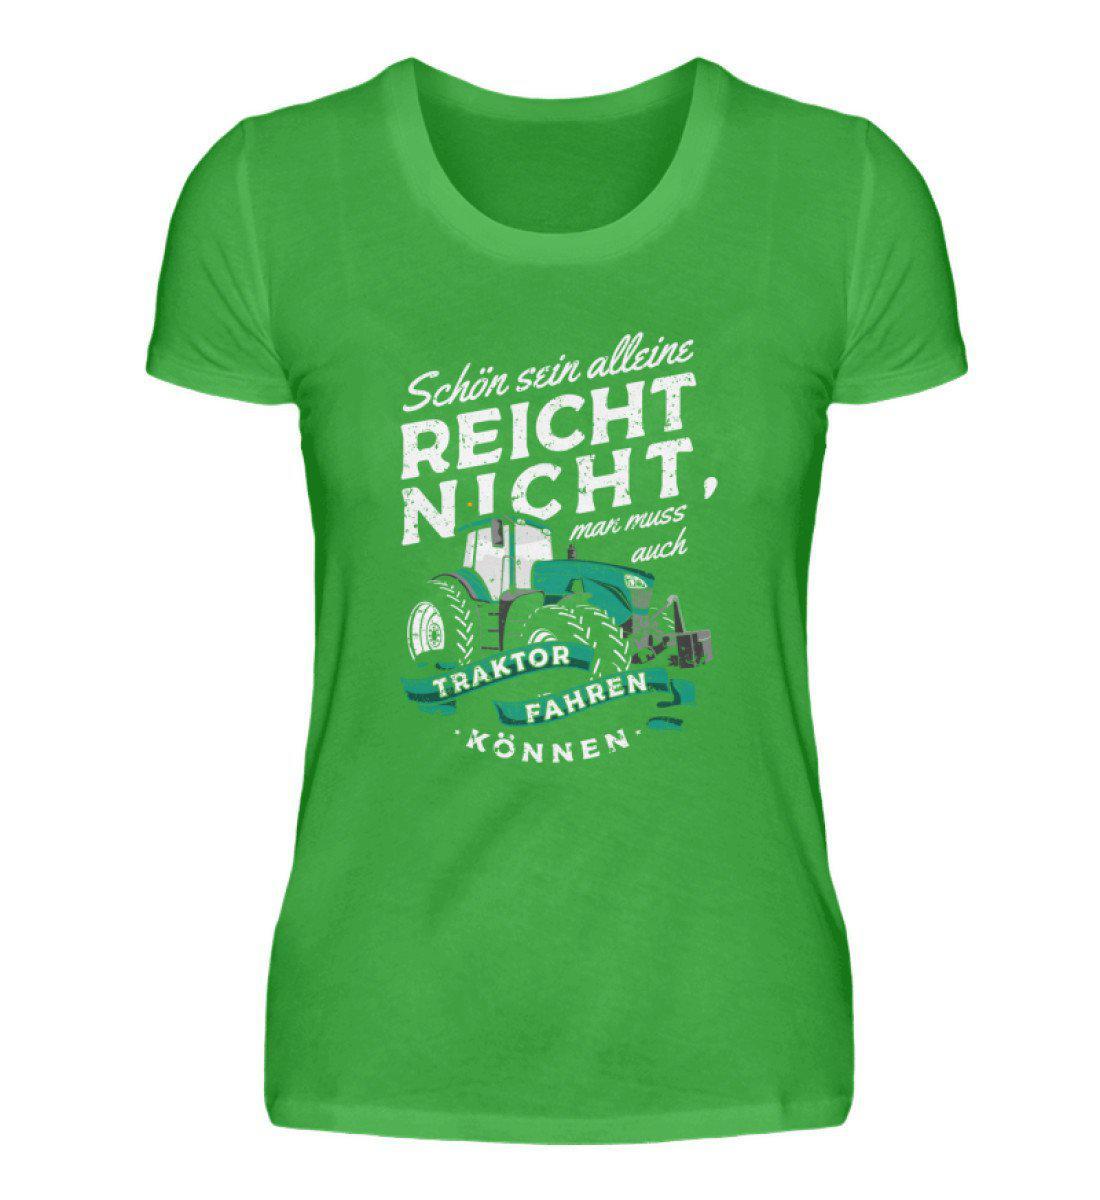 Schön sein alleine reicht nicht · Damen T-Shirt-Damen Basic T-Shirt-Green Apple-S-Agrarstarz